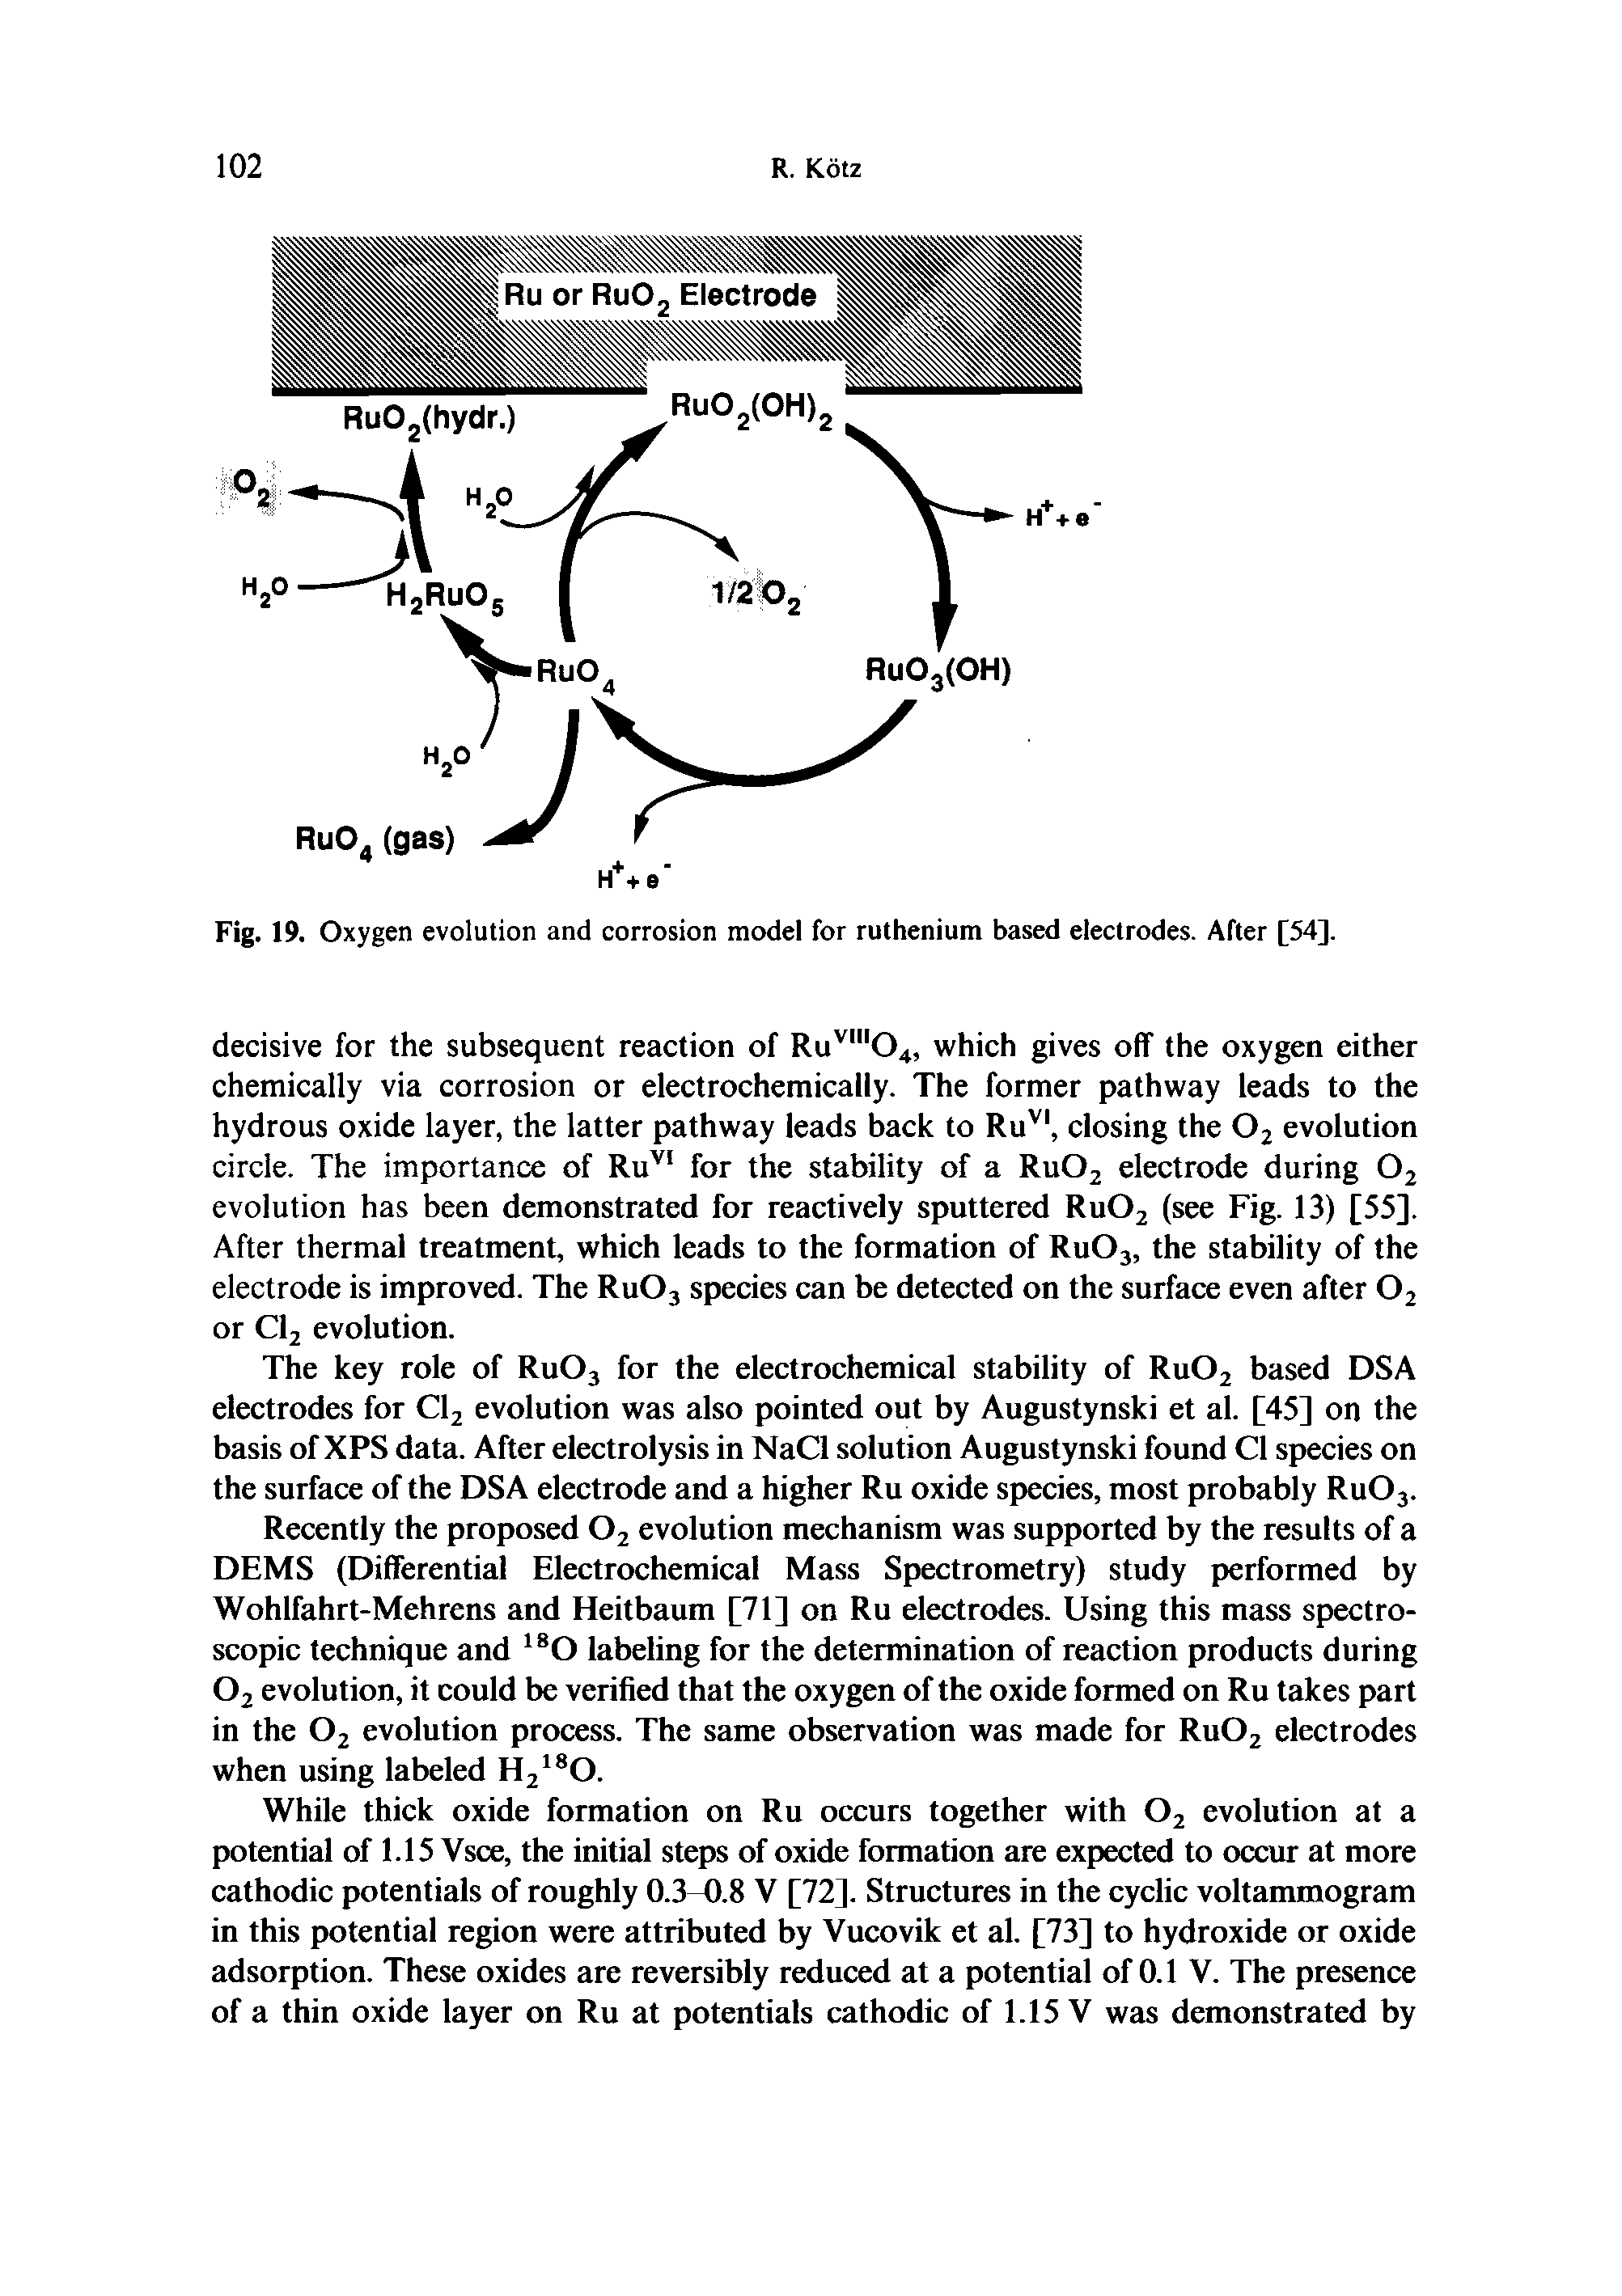 Fig. 19. Oxygen evolution and corrosion model for ruthenium based electrodes. After [54].